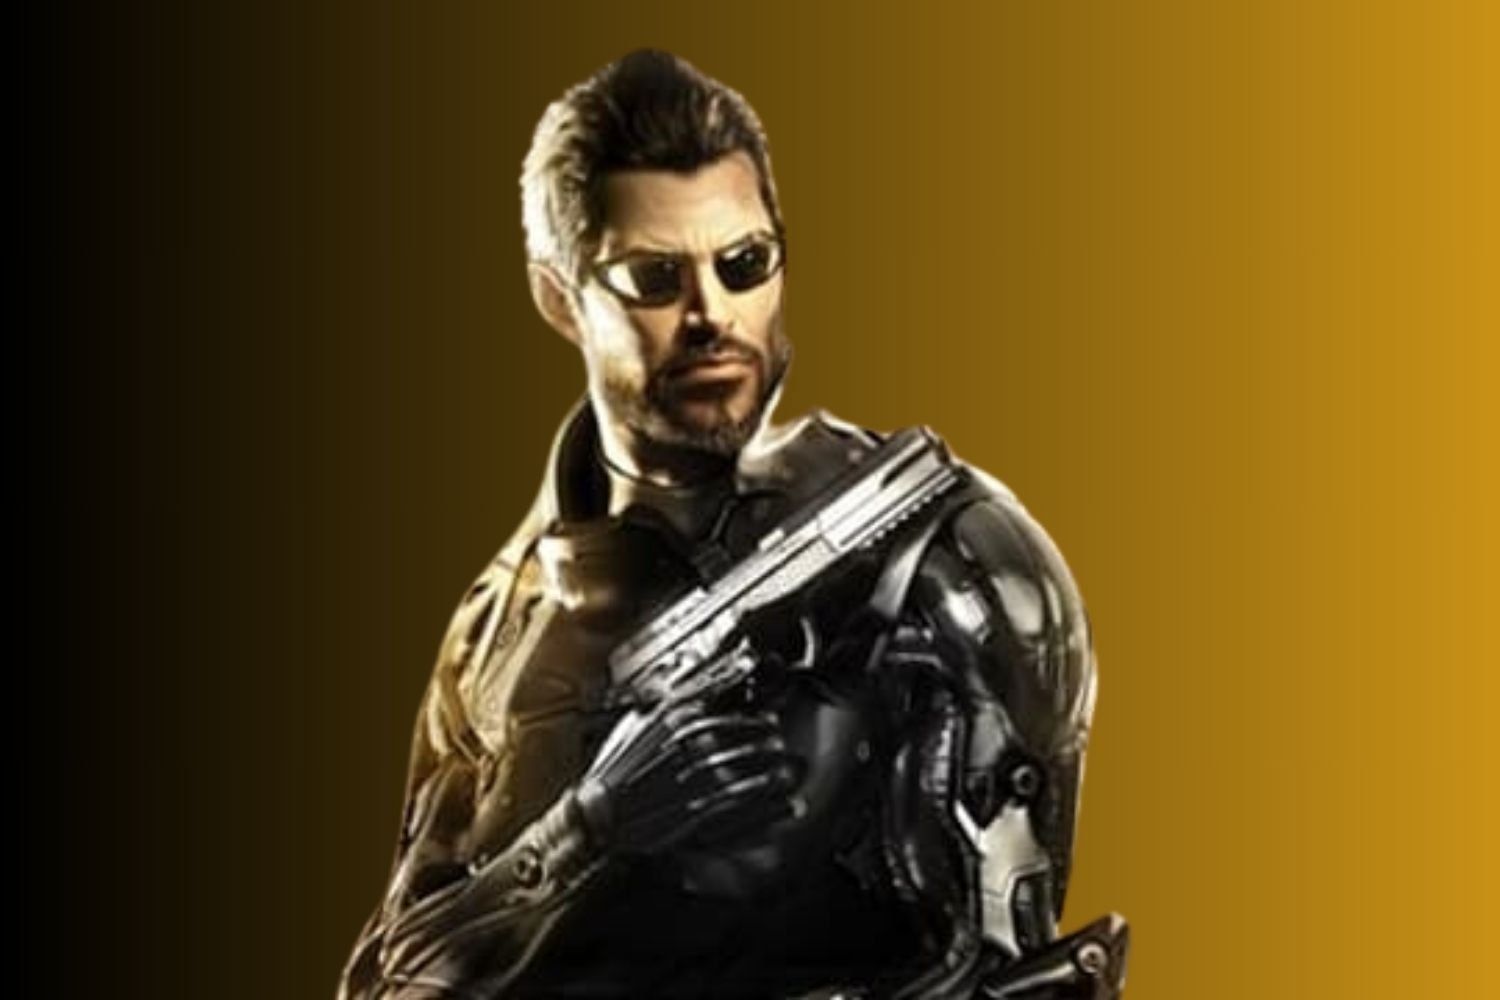 Le prochain jeu Deus Ex est annulé à cause de licenciements